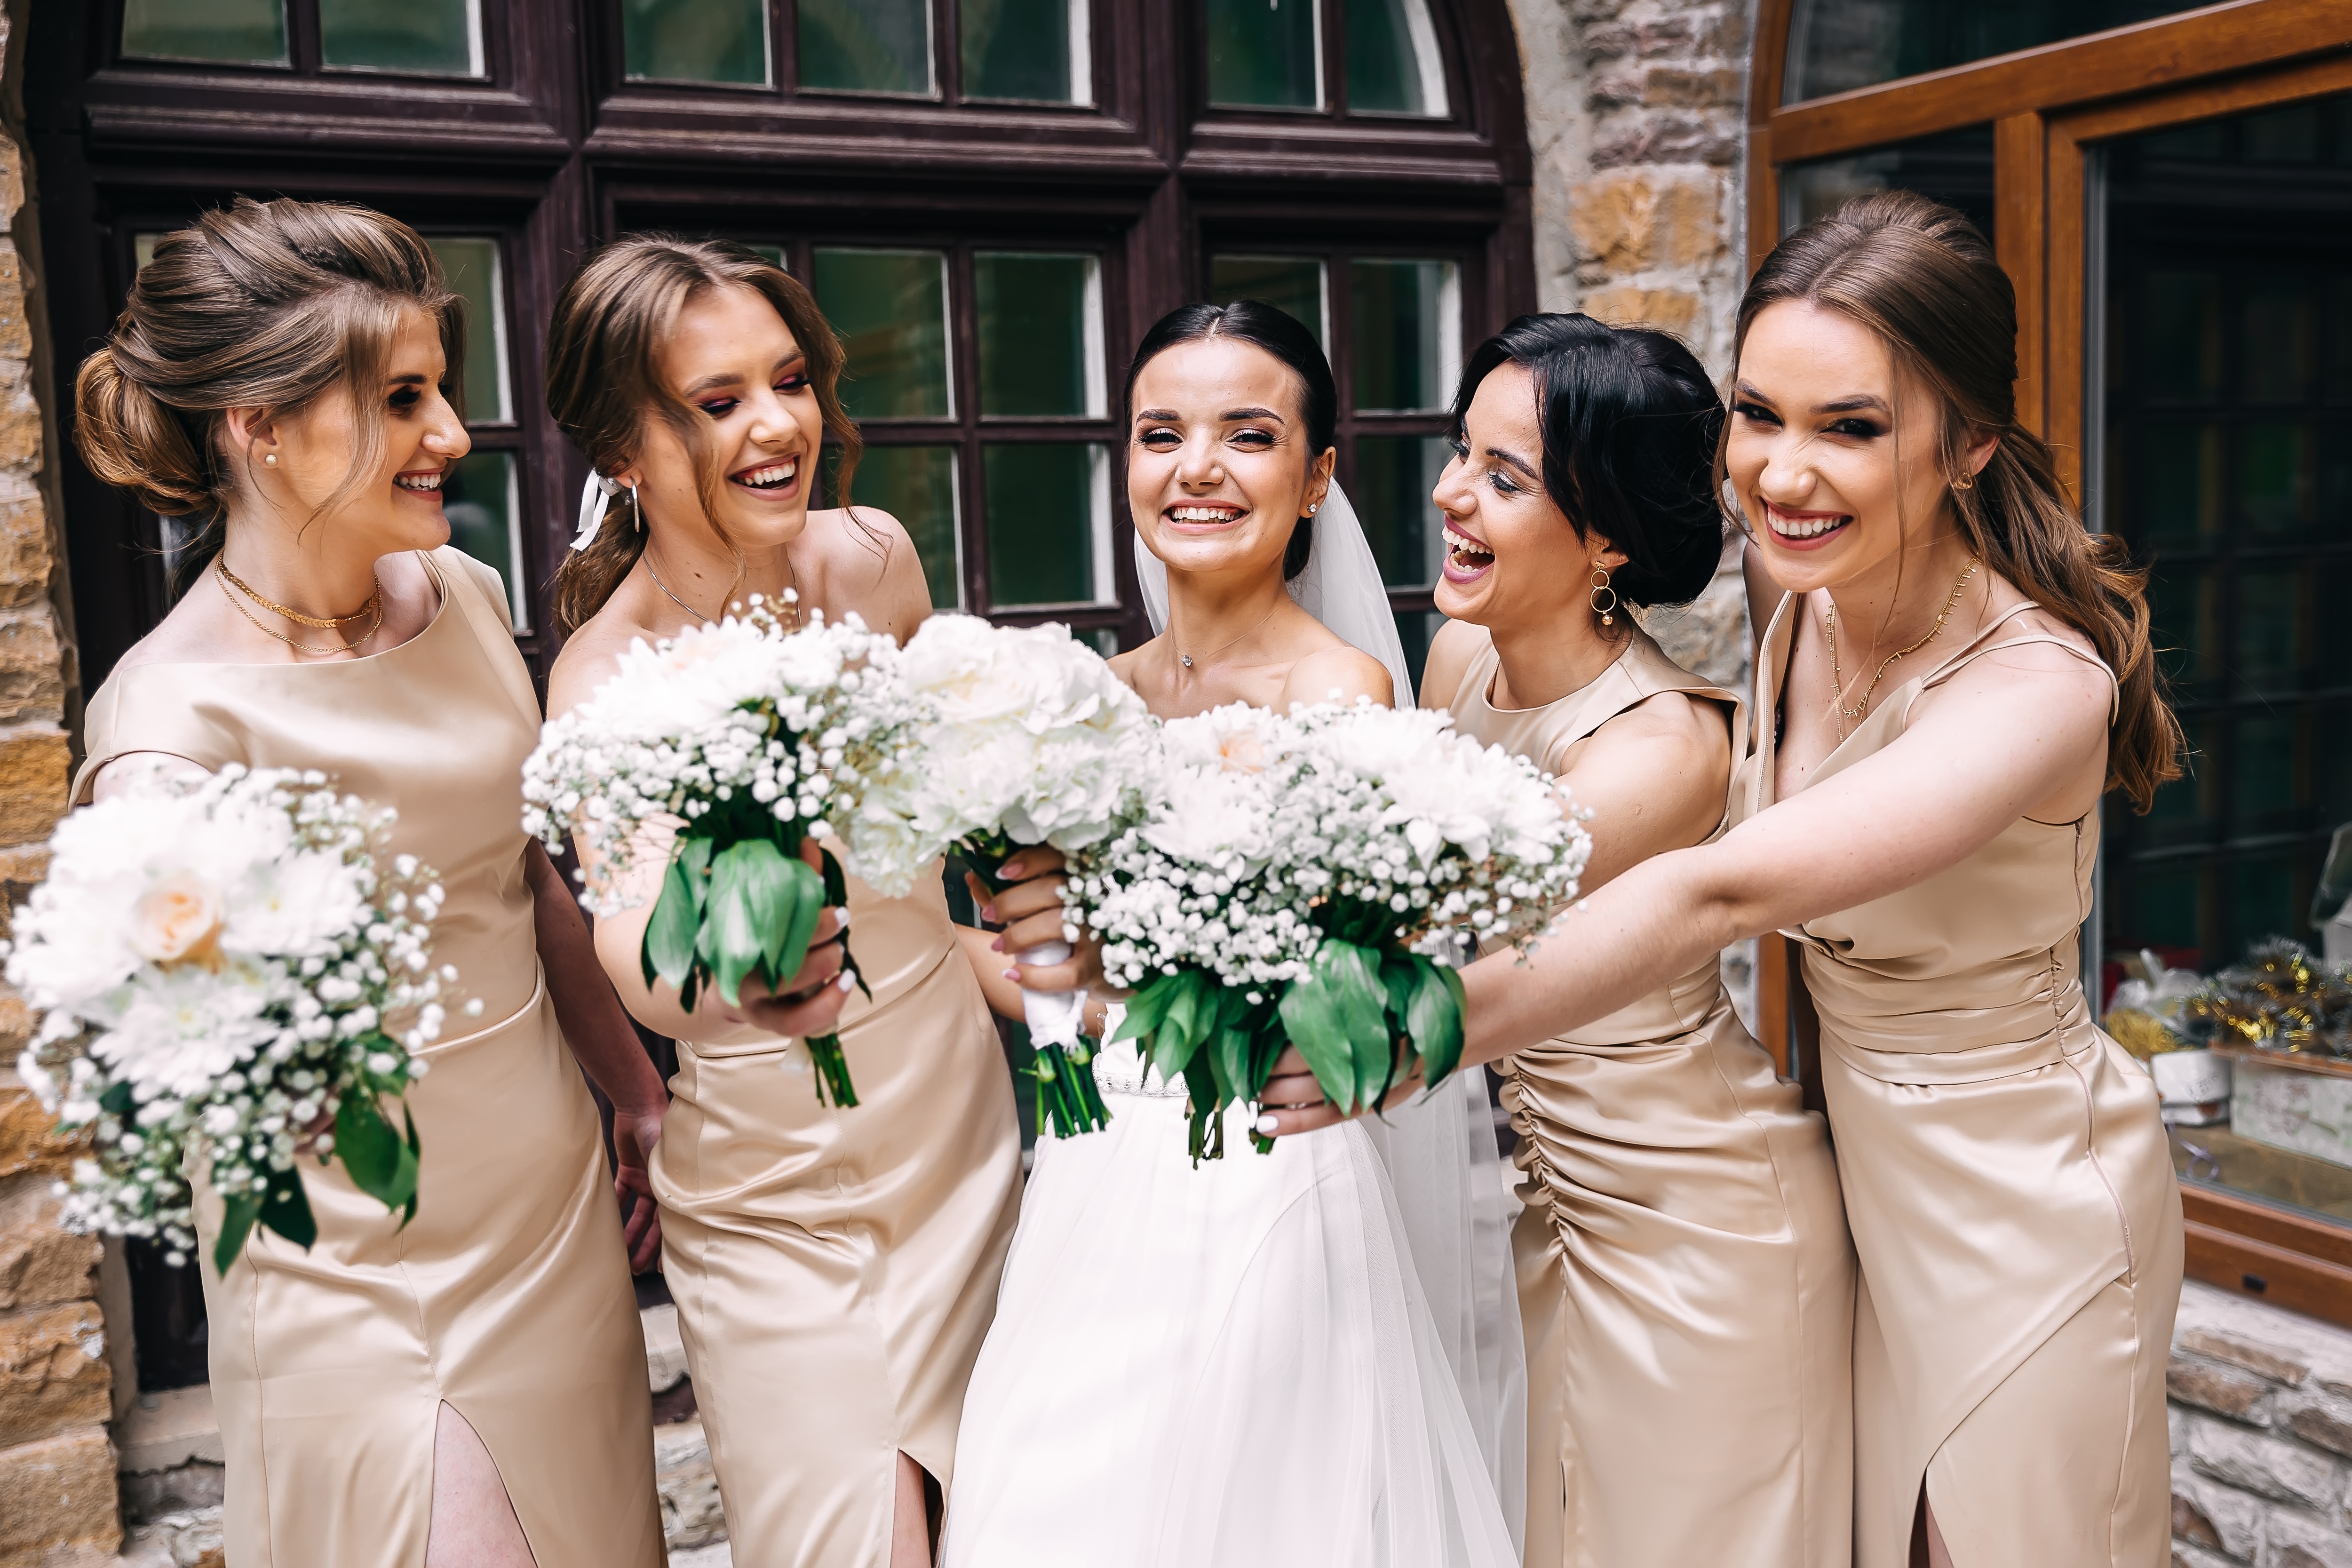 Un groupe de jeunes mariés heureux posant pour une photo | Source : Shutterstock